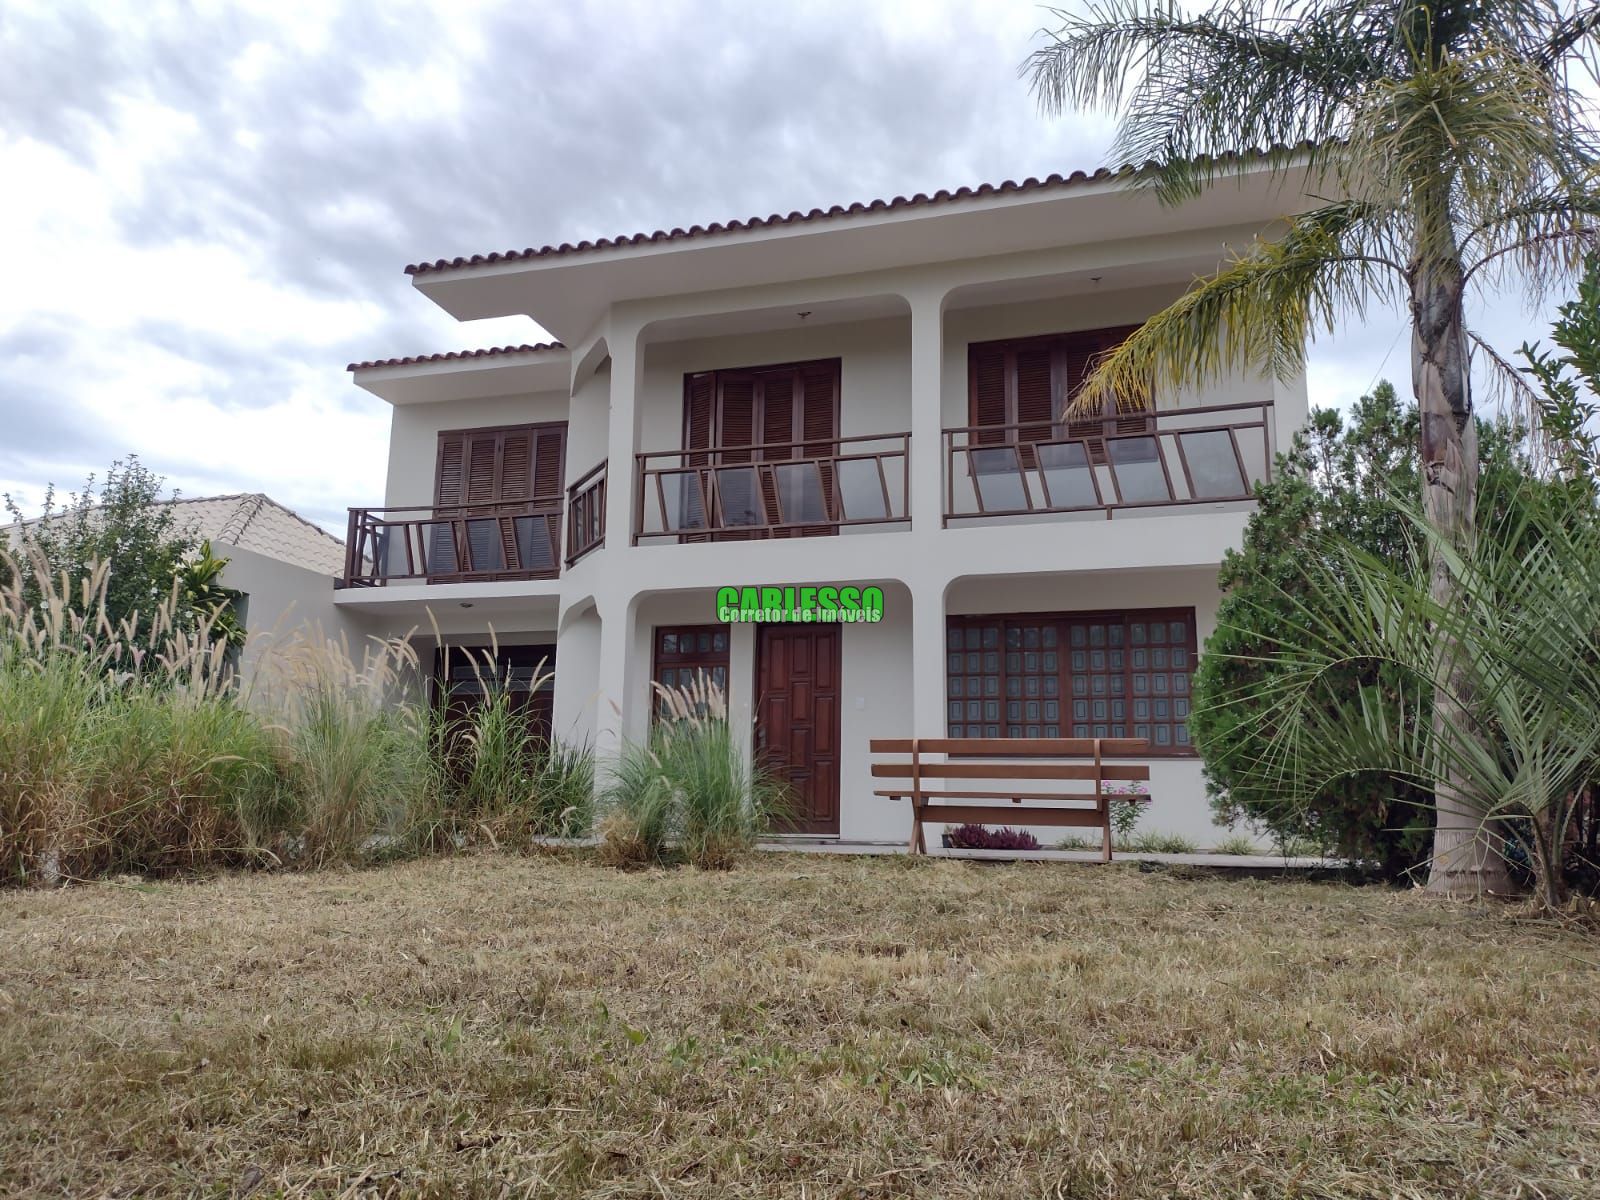 Casa  venda  no Boca do Monte - Santa Maria, RS. Imveis